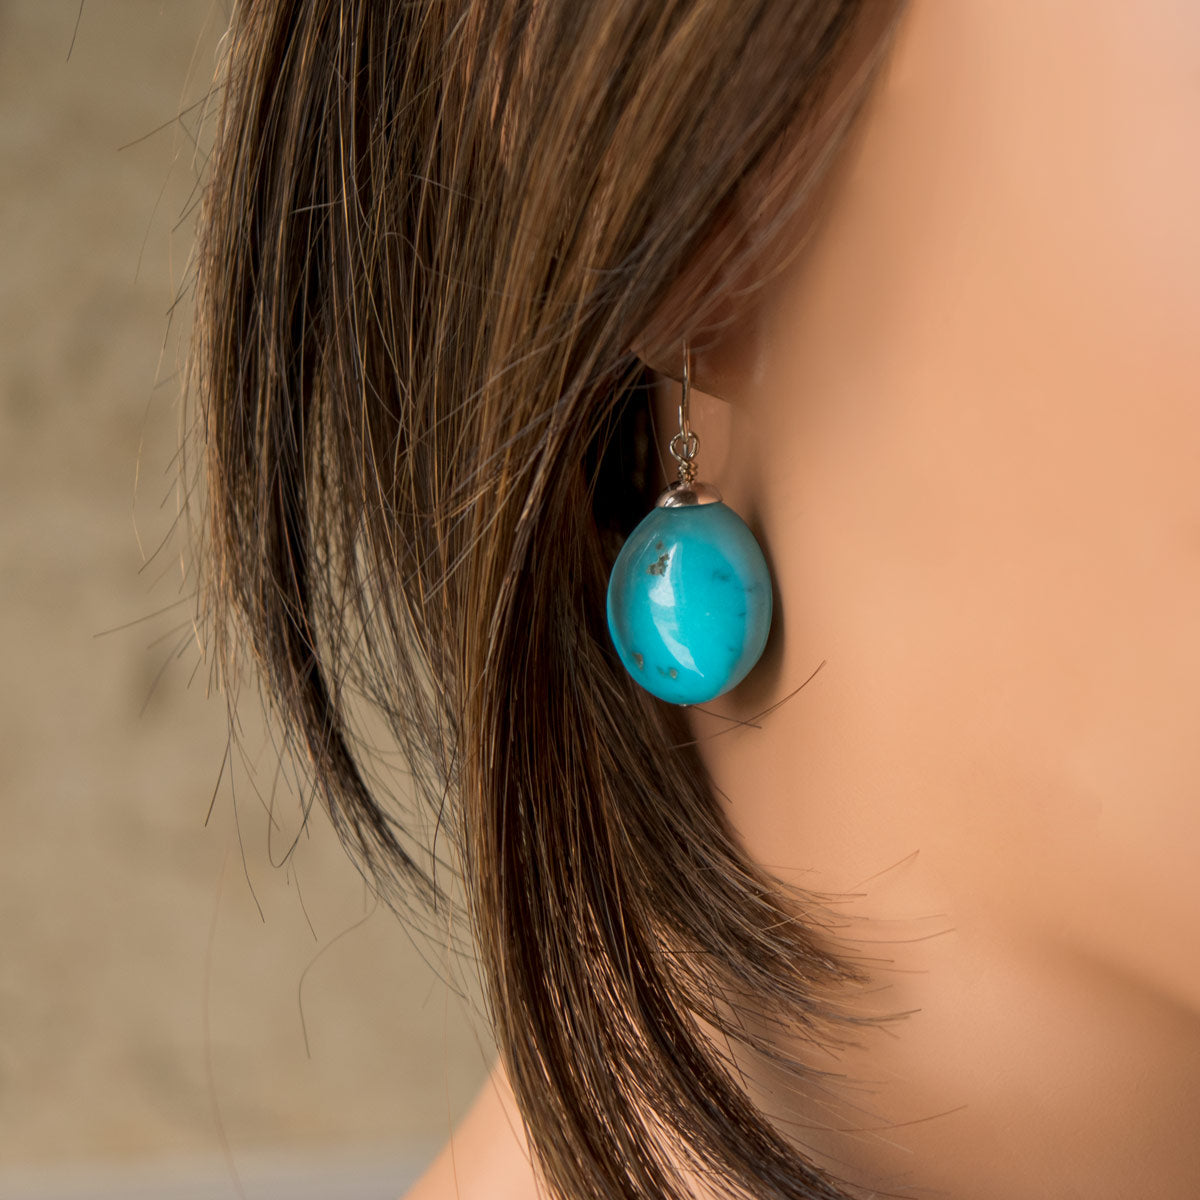 Sleeping Beauty Turquoise Earrings - 1